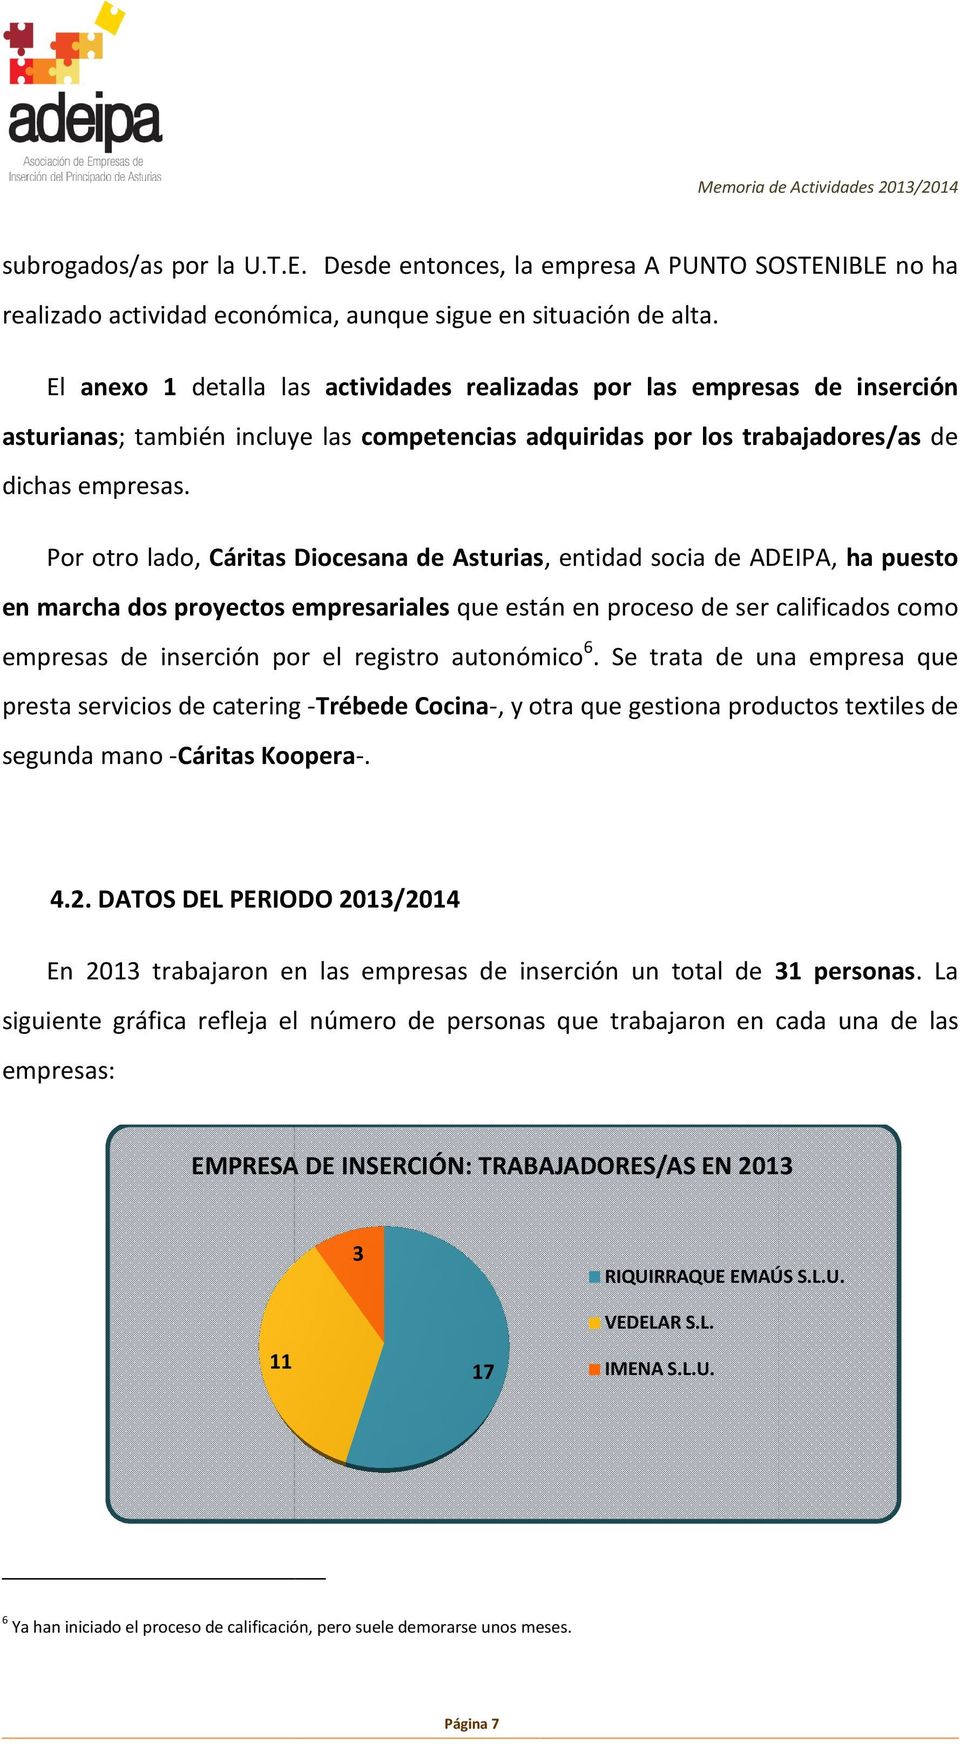 Por otro lado, Cáritas Diocesana de Asturias,, entidad socia de ADEIPA, ha puesto en marcha dos proyectos empresariales que están en proceso de ser calificados como empresas de inserción por el